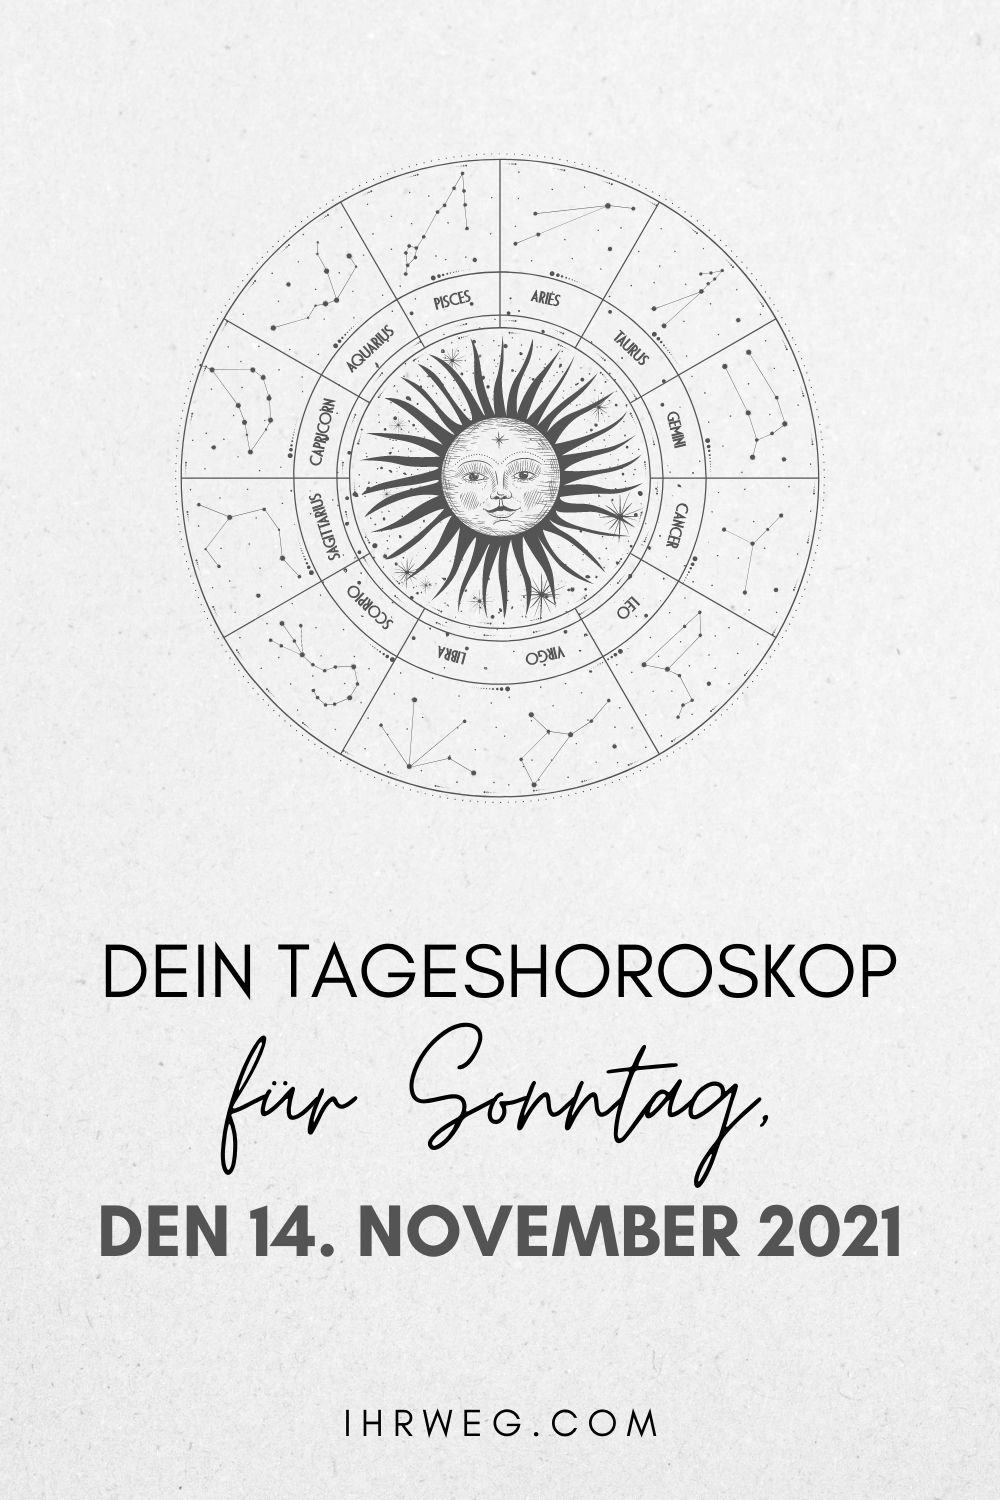 Dein Tageshoroskop für Sonntag, den 14. November 2021 pinterestgeshoroskop für Sonntag, den 14. November 2021 pinterest